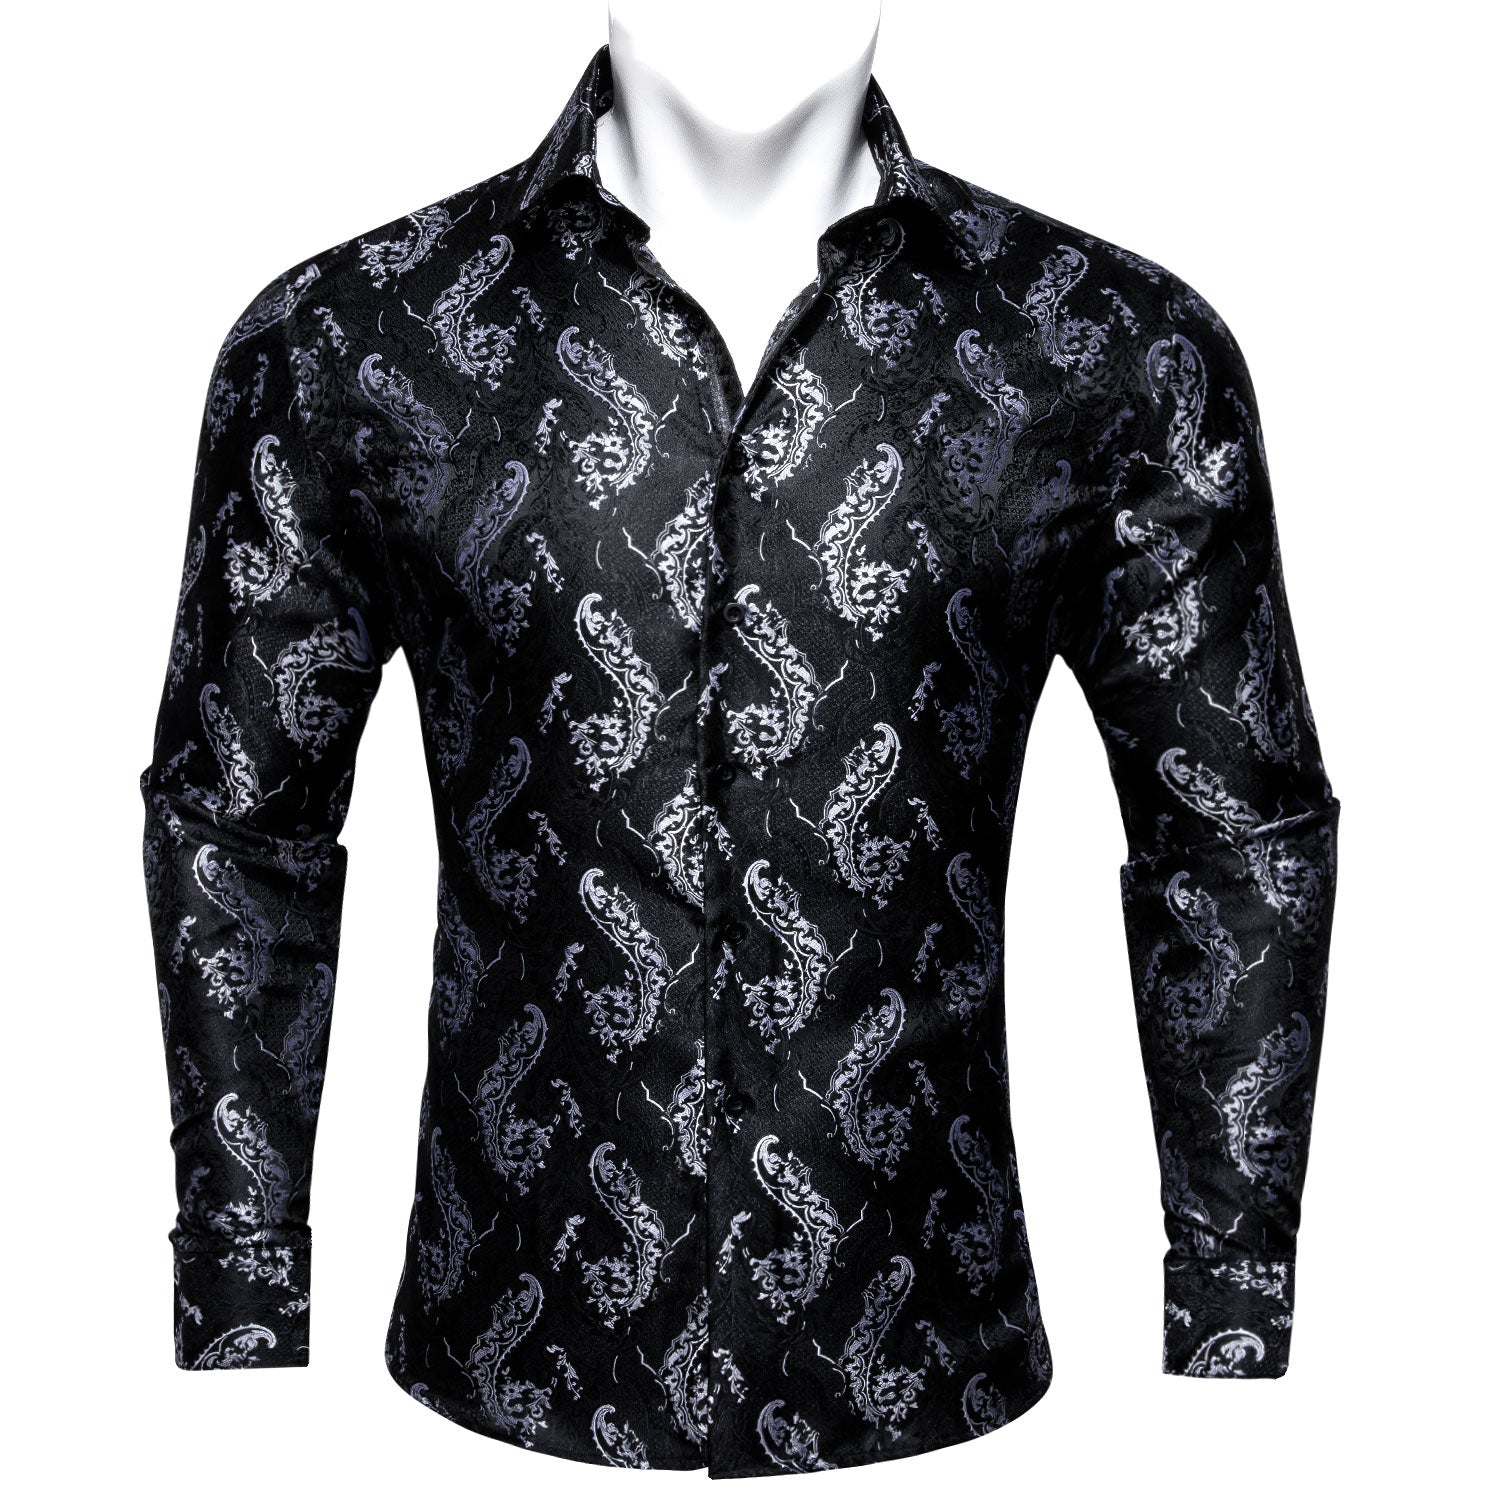 Barry.wang Black Floral Silk Men's Long Sleeve Shirt